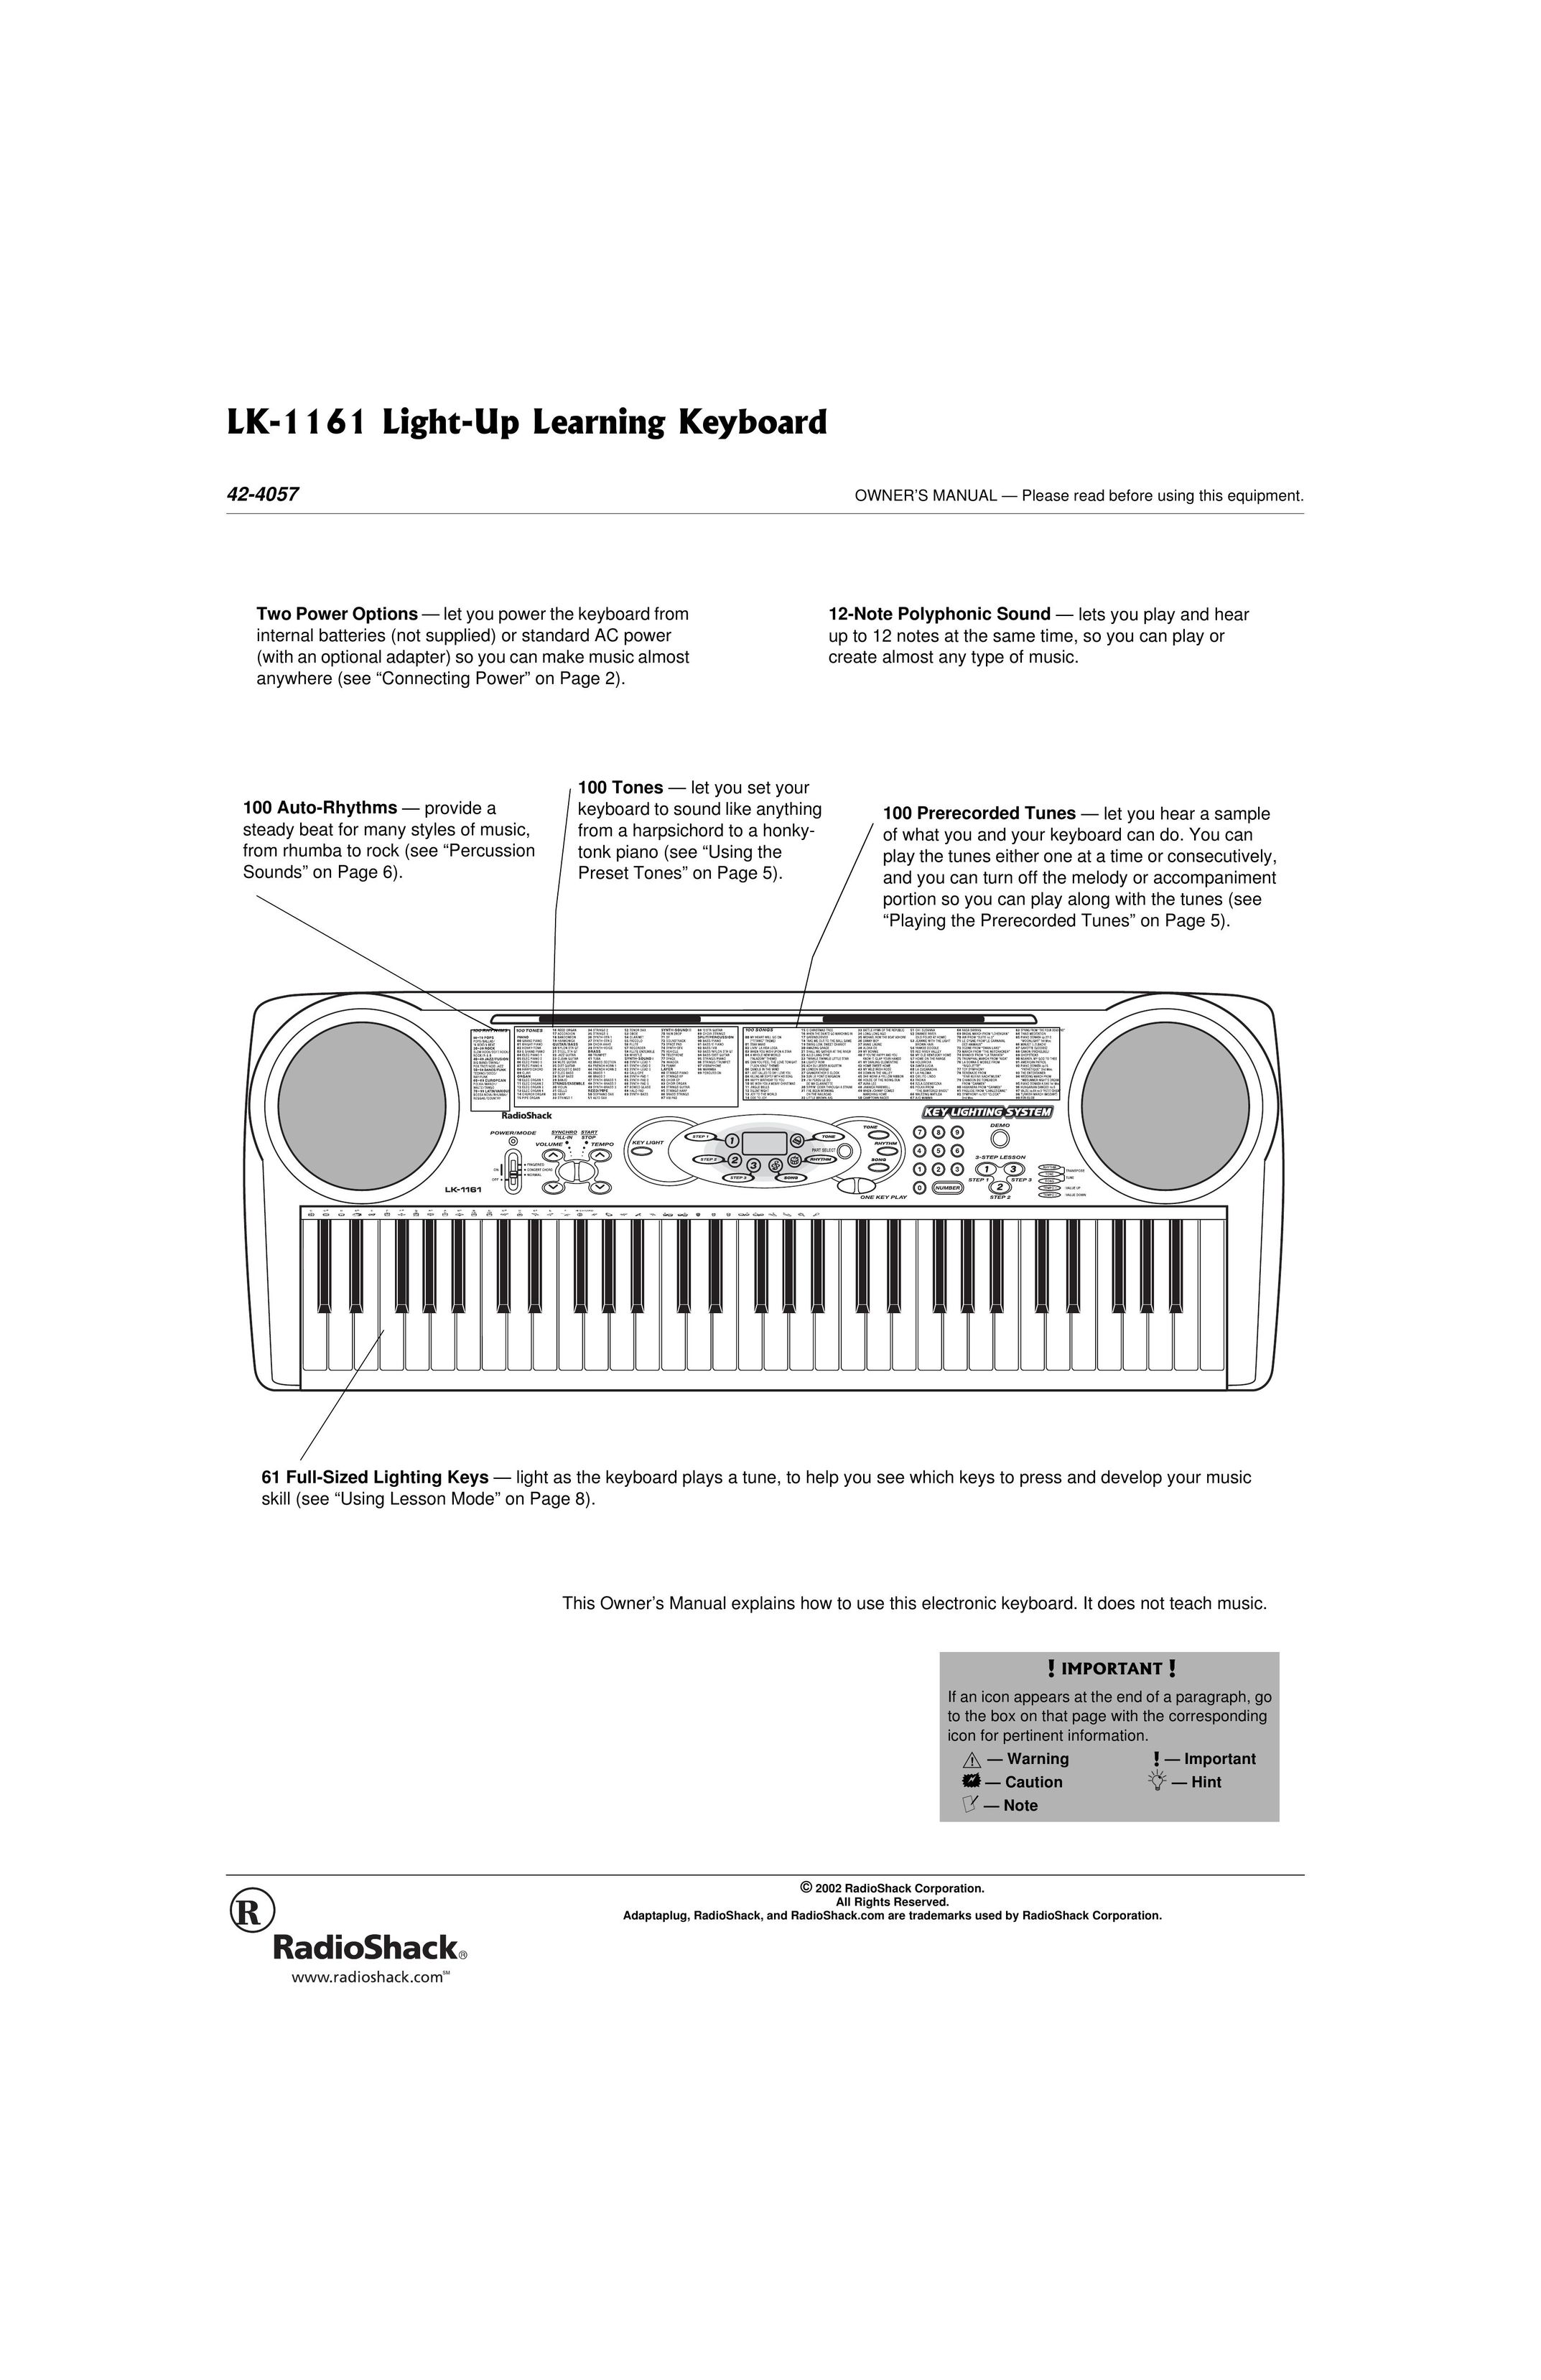 Radio Shack LK-1161 Video Game Keyboard User Manual